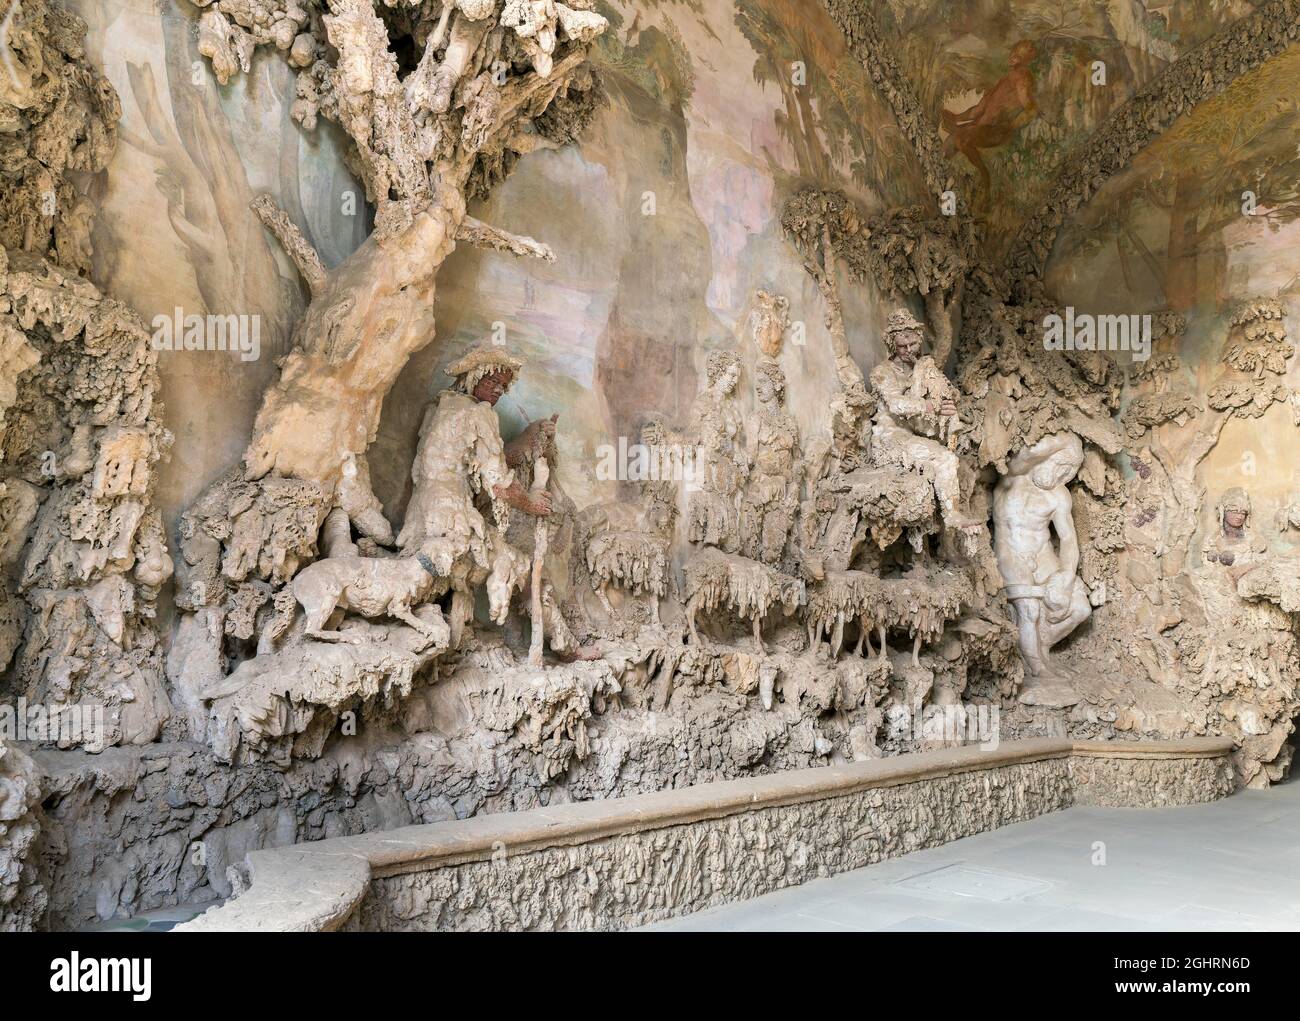 Grotta del Buontalenti, Grotto of the Buontalenti, 1583-1593, architect and sculptor Bernardo Buontalenti, Giardino di Boboli, Boboli Garden with Stock Photo